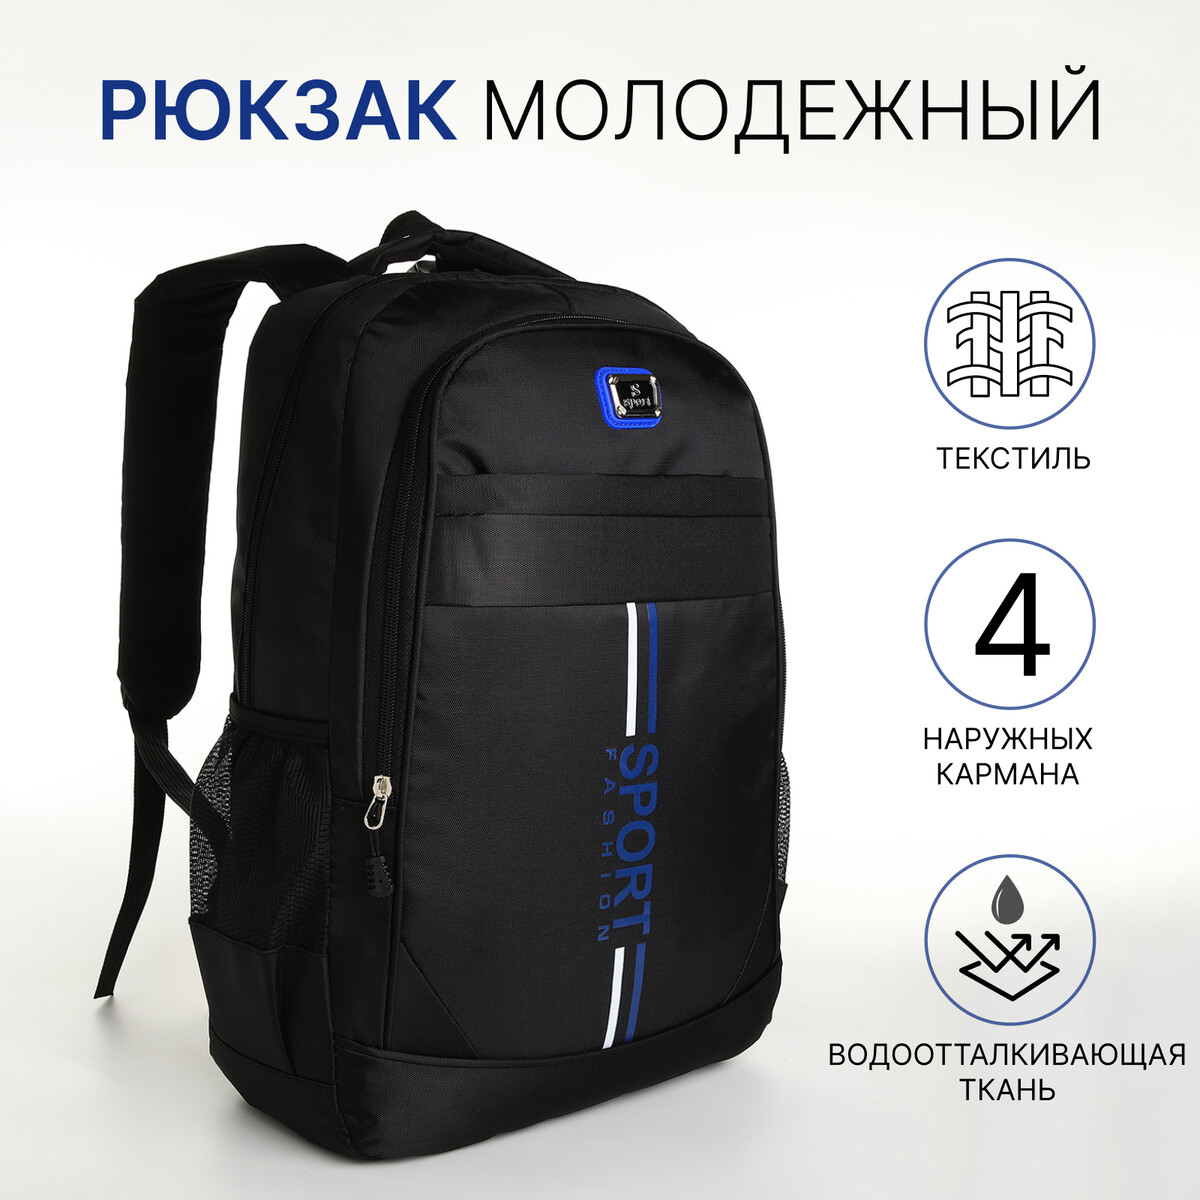 Рюкзак молодежный на молнии, 4 кармана, цвет черный/синий рюкзак молодежный из текстиля на молнии 3 кармана сумка держатель для чемодана синий